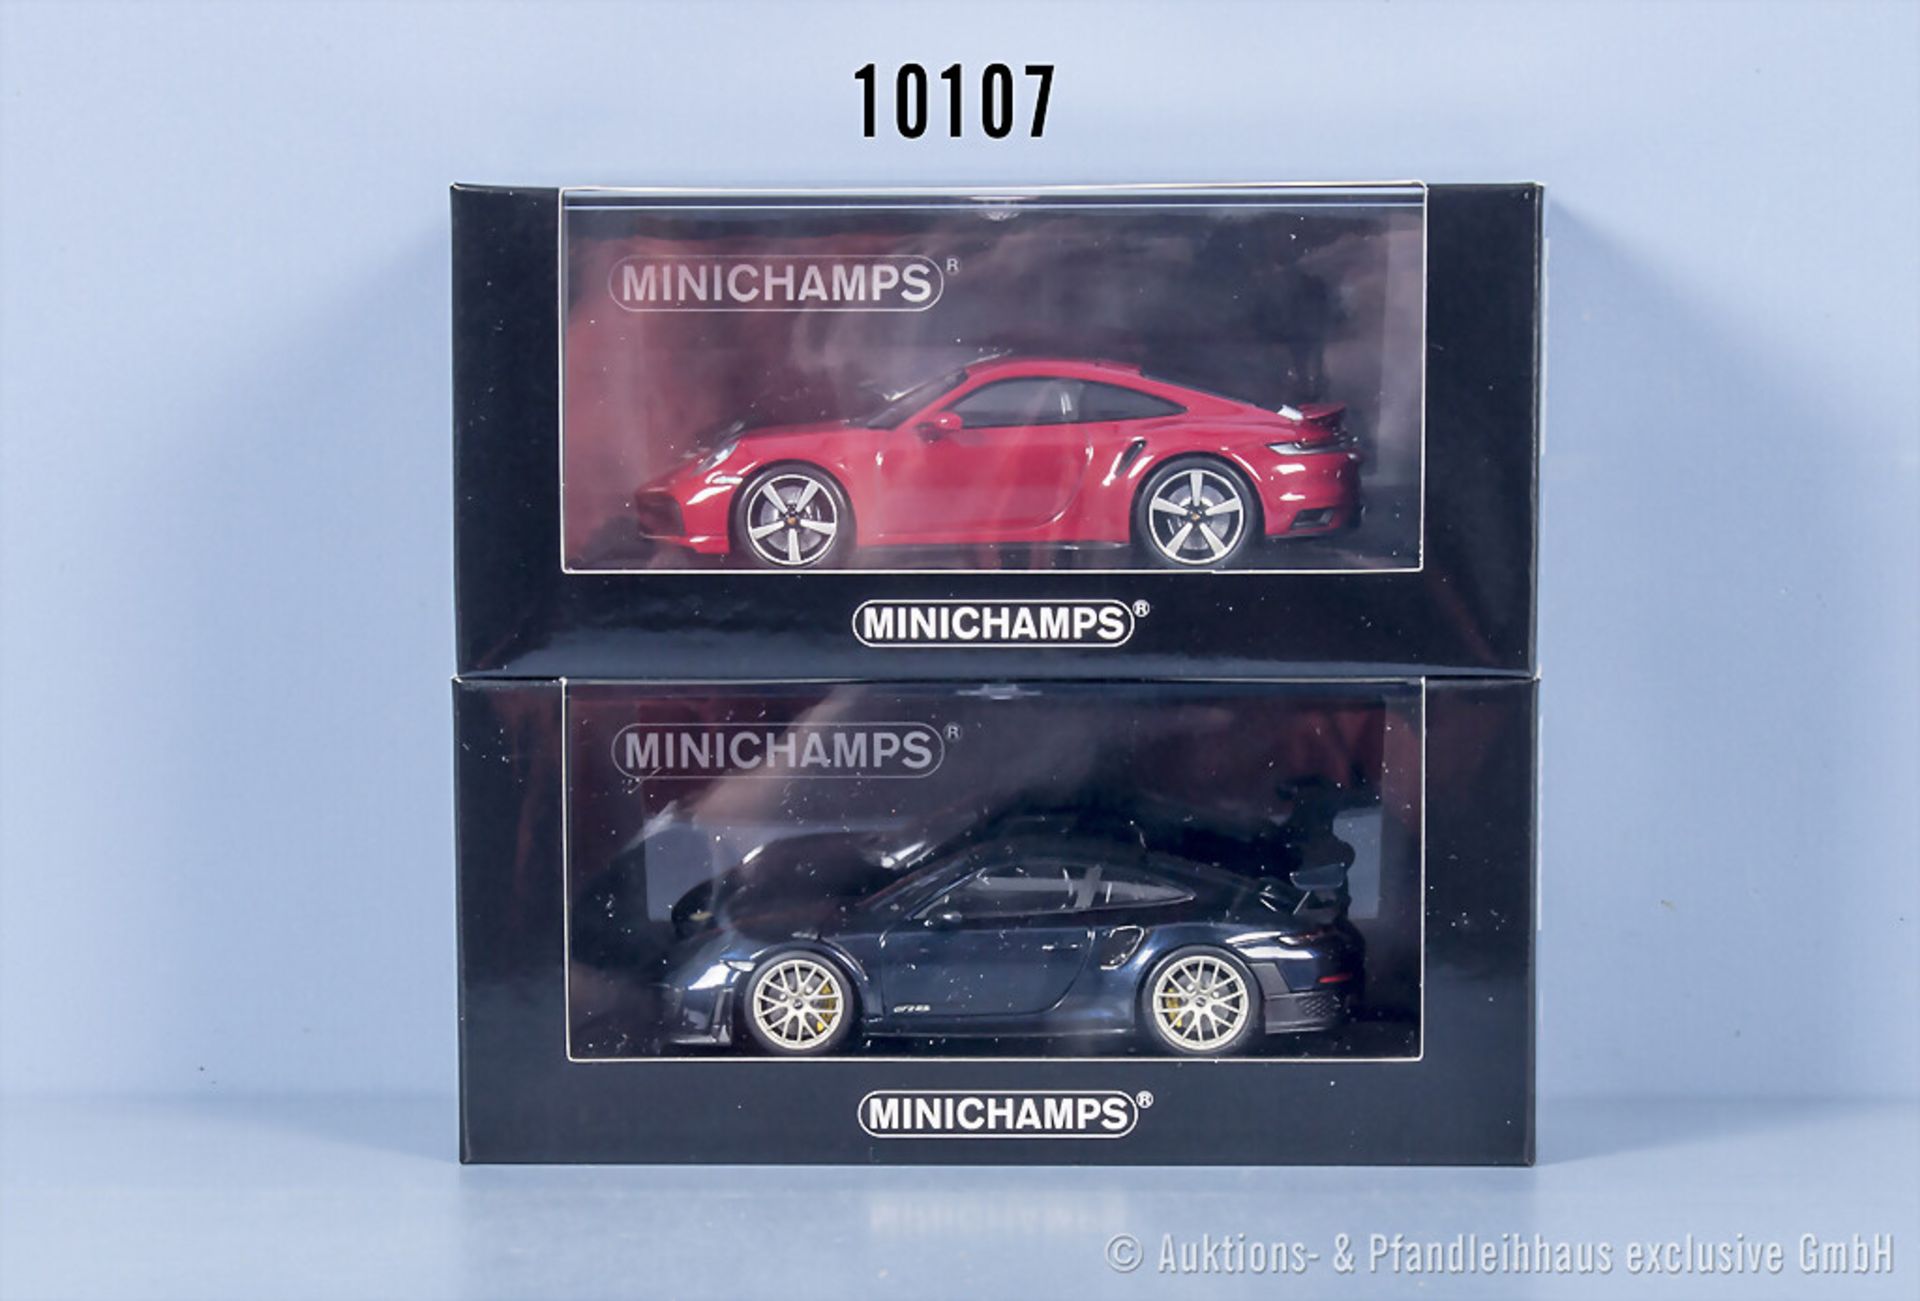 2 Minichamps Porsche 911 Modellautos, Turbo S und GT2RS, Metall, 1:43, limitiert auf ...